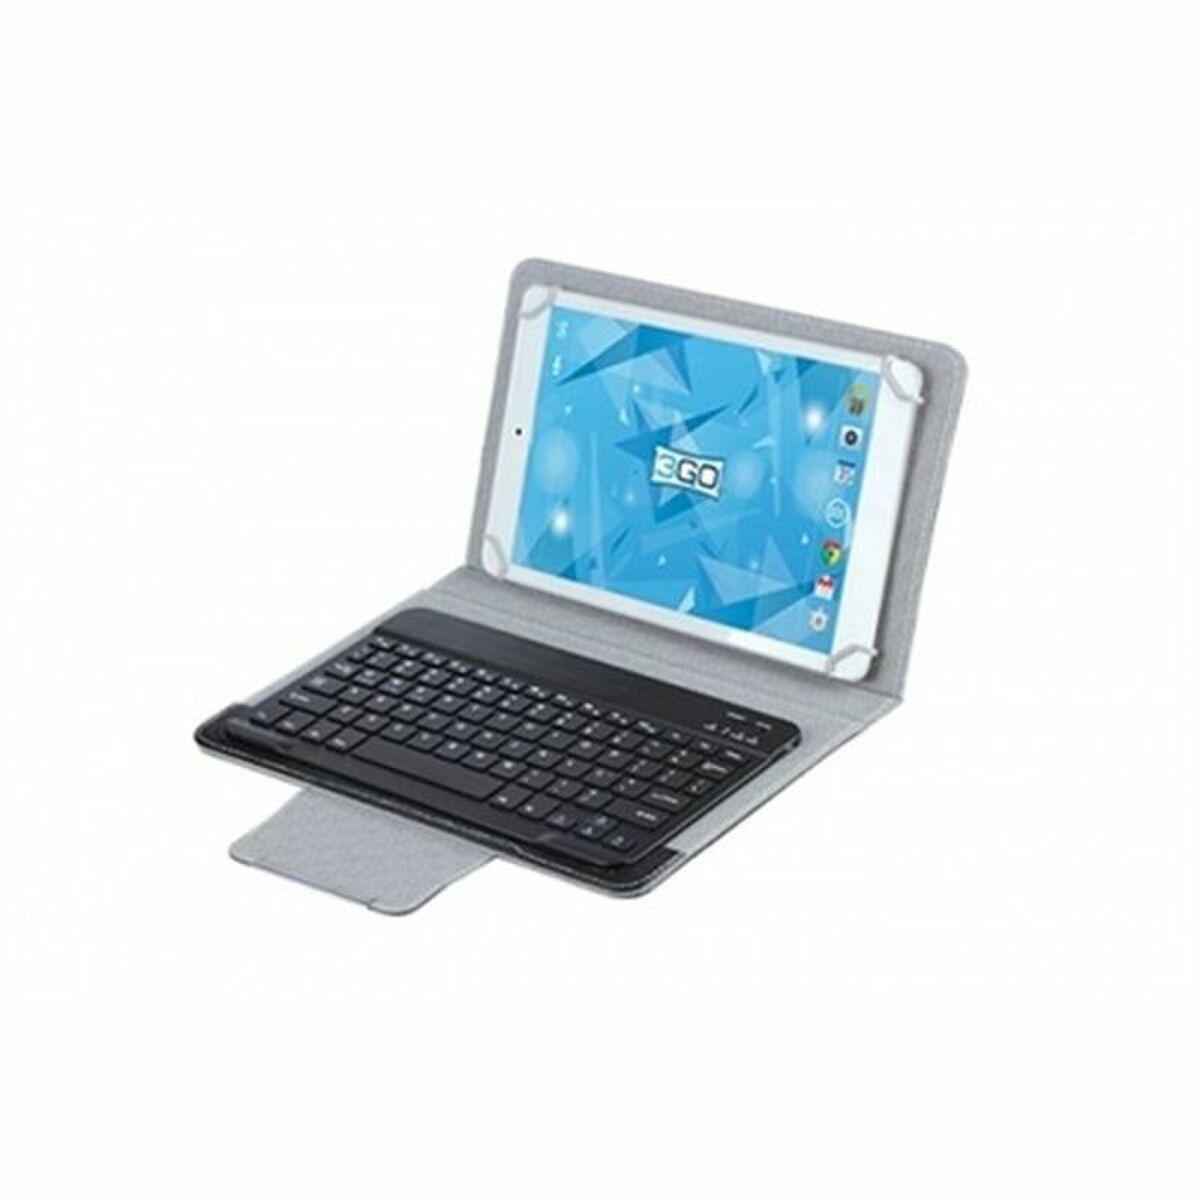 Abdeckung für 3GO CSGT28 10" Tablet und Tastatur Schwarz